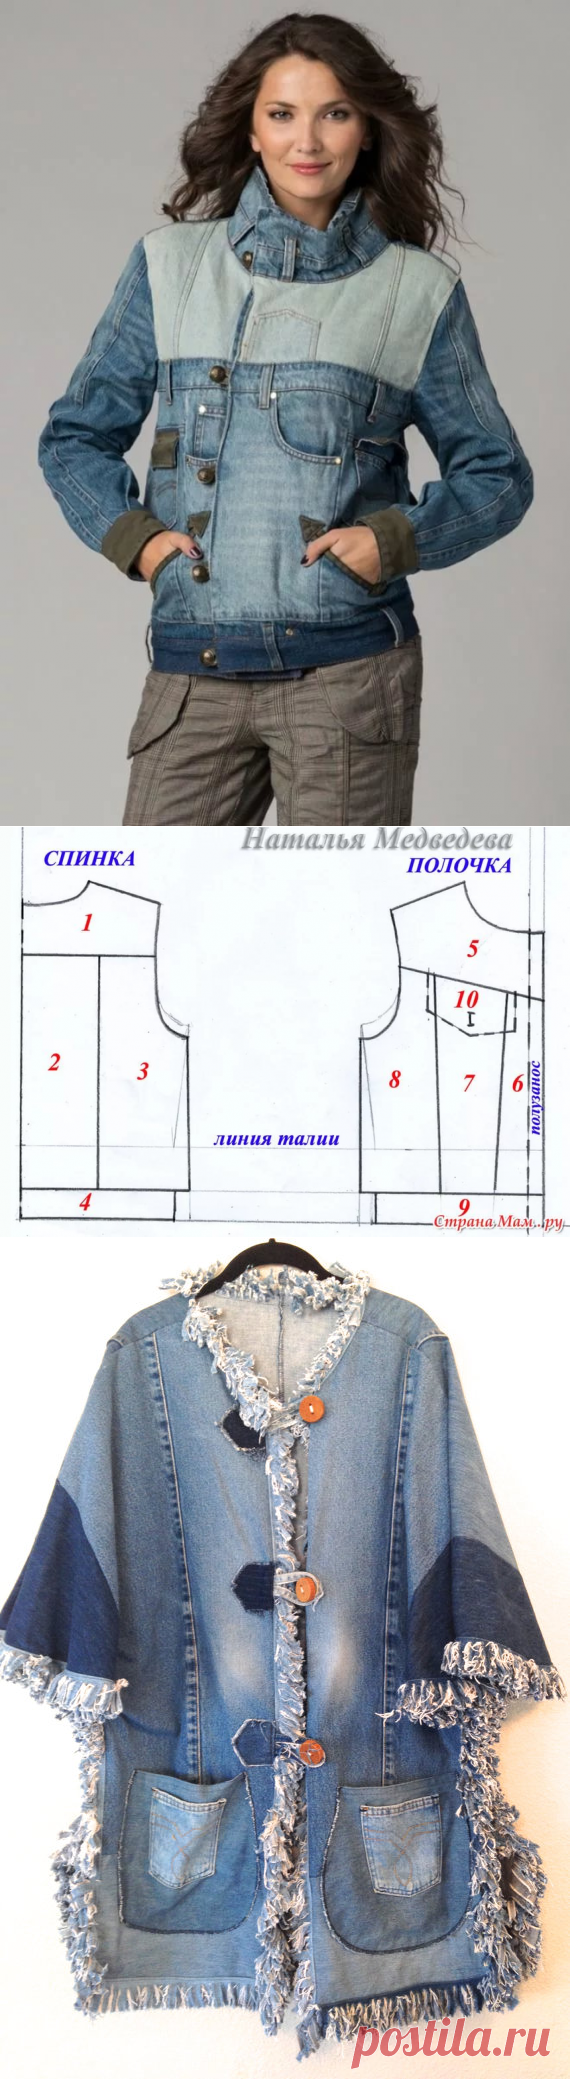 Из старых джинсов. Переделки. Часть 7. Жакеты, куртки .: 14 тыс изображений найдено в Яндекс.Картинках